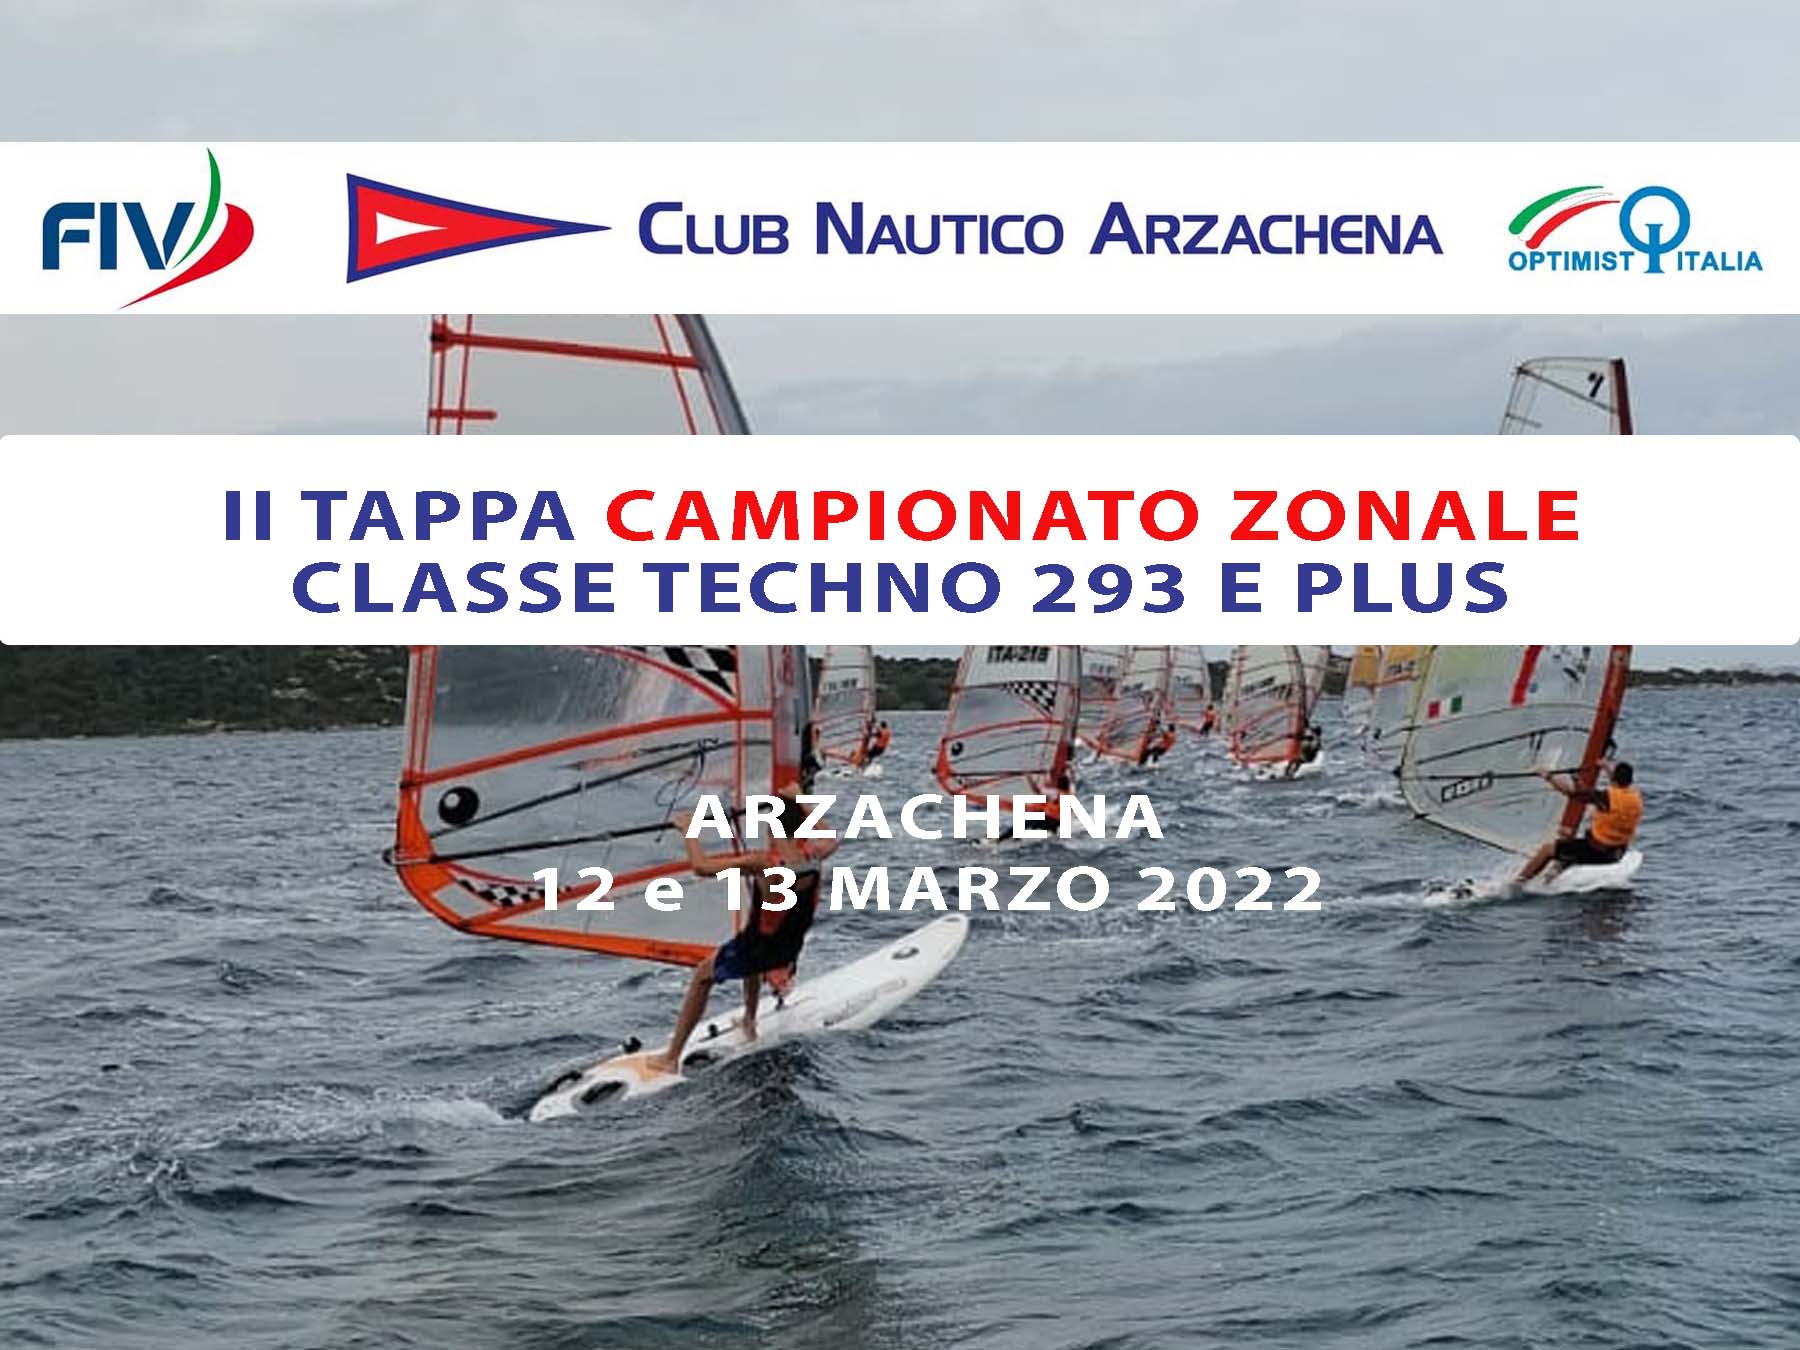 Windsurf, II Tappa Campionato Zonale Classe Techno 293 e plus, Arzachena 2022